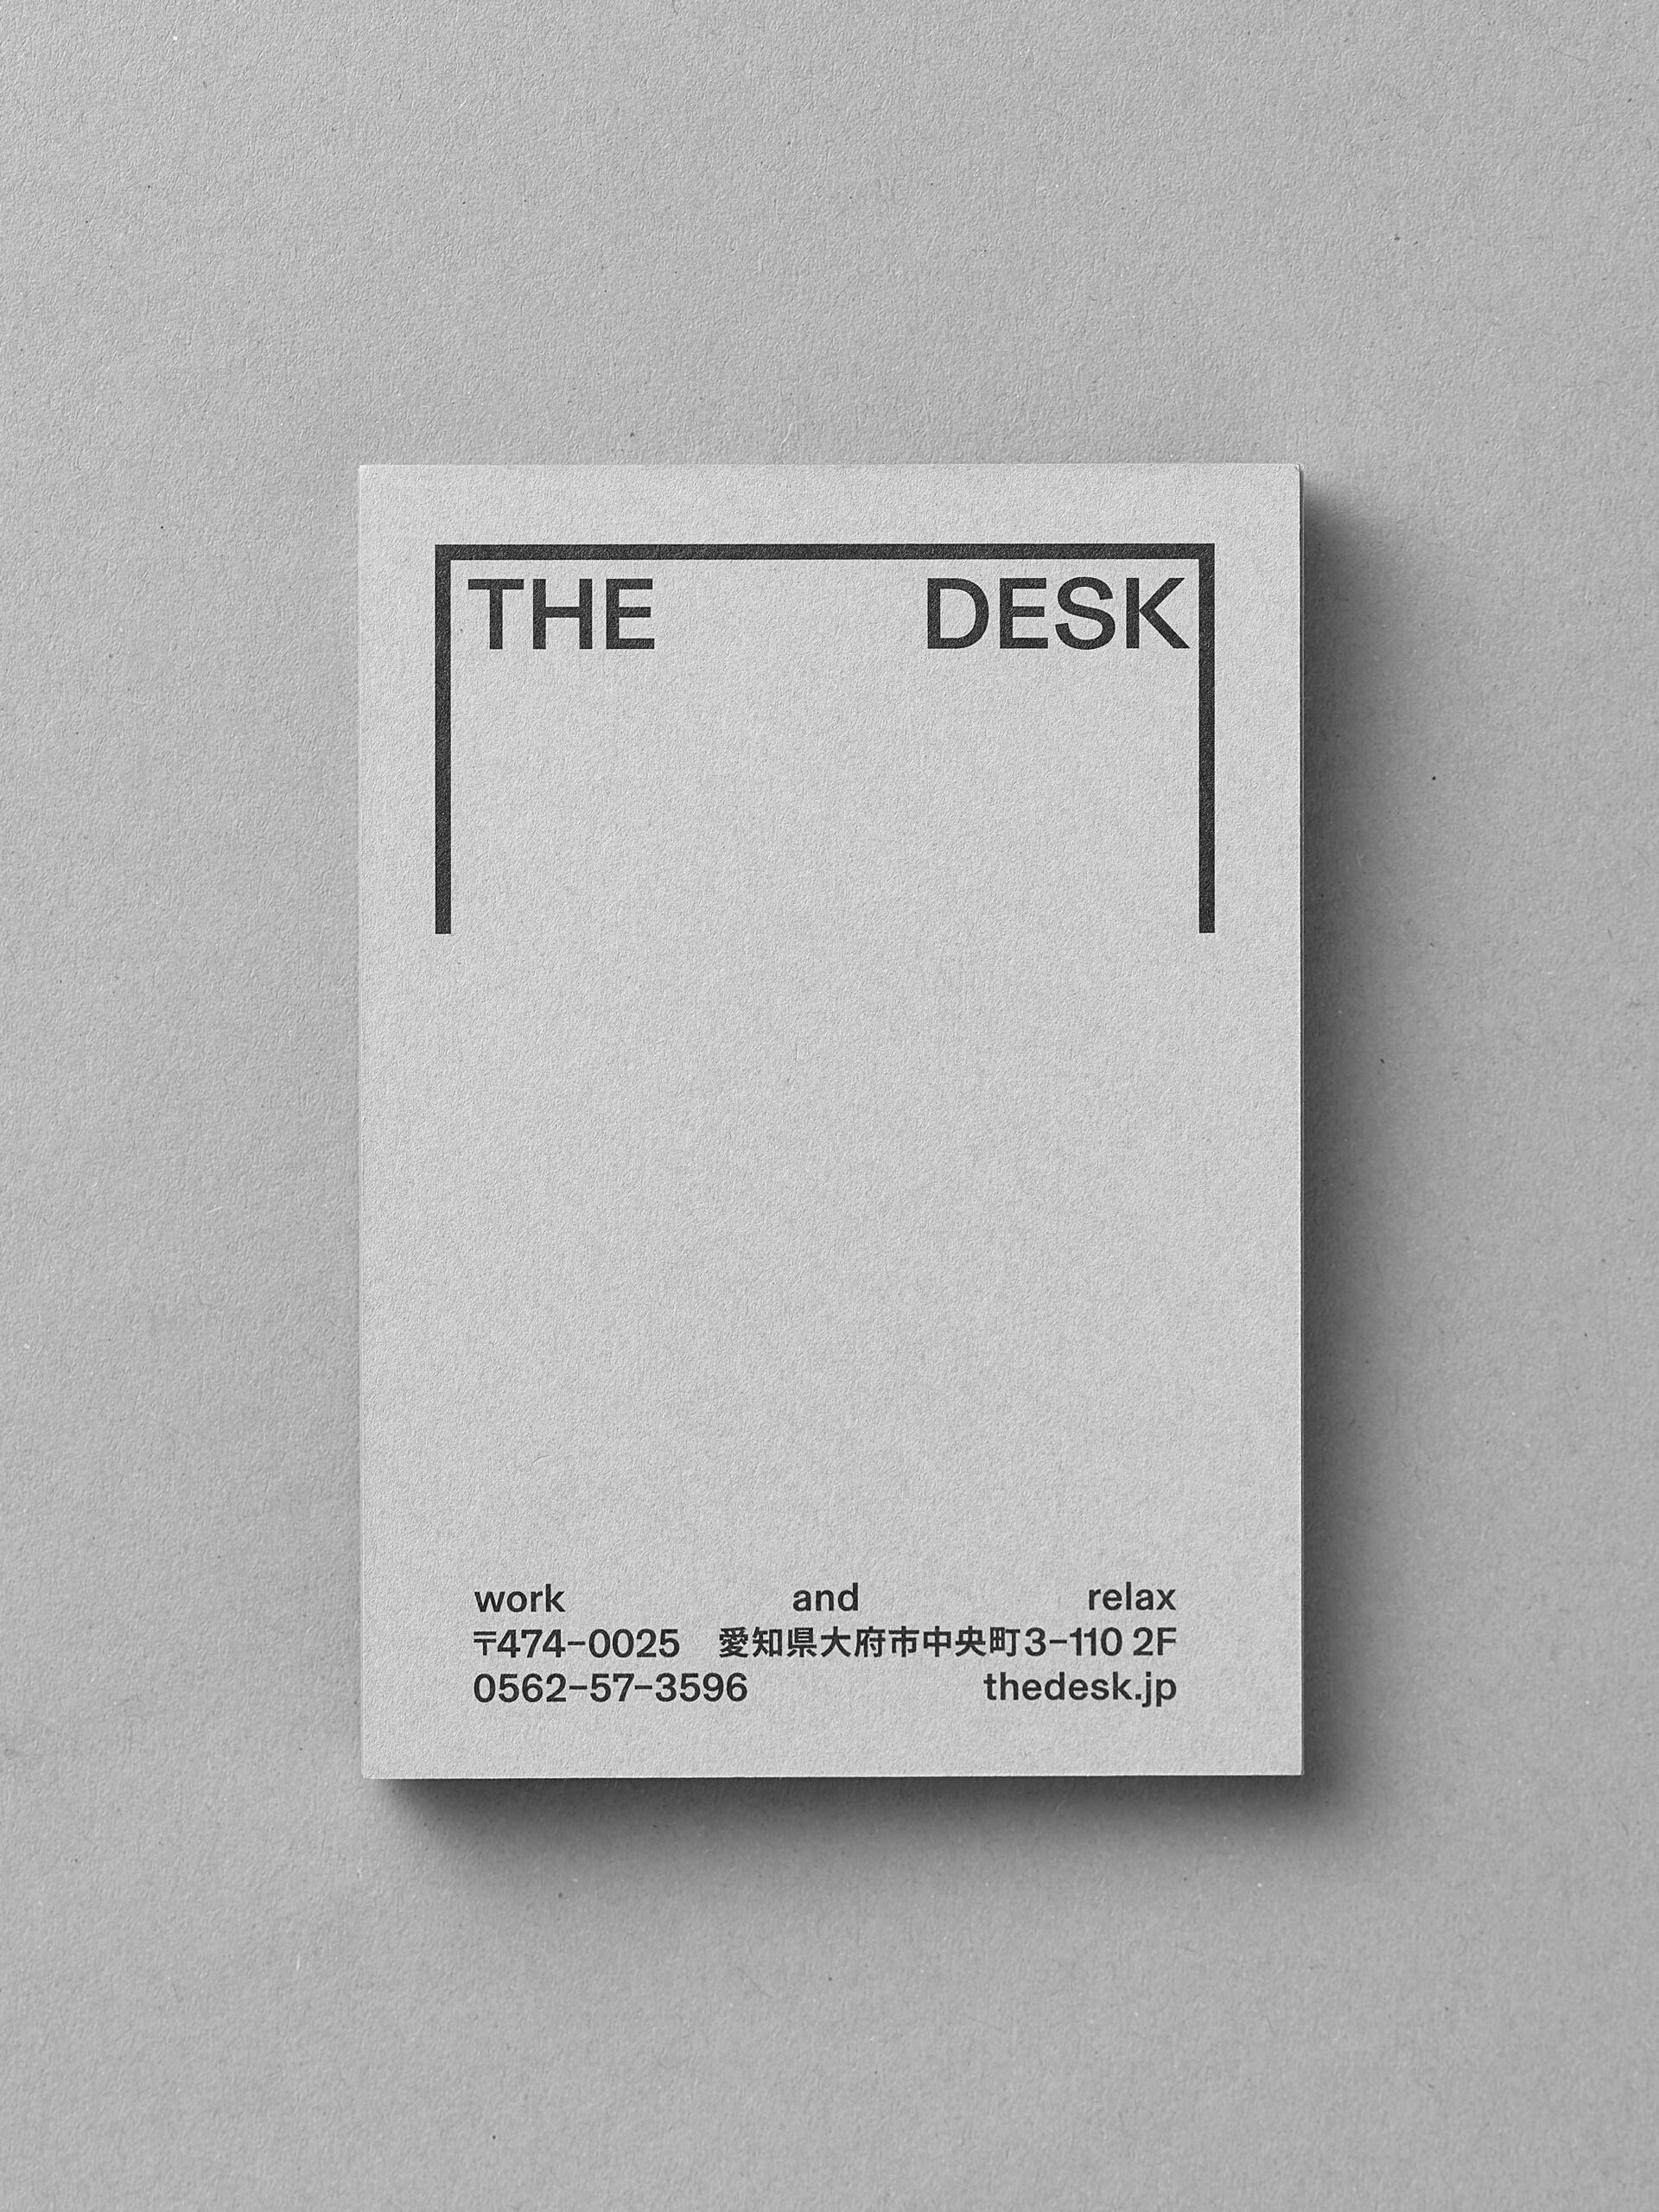 The Desk shop card back